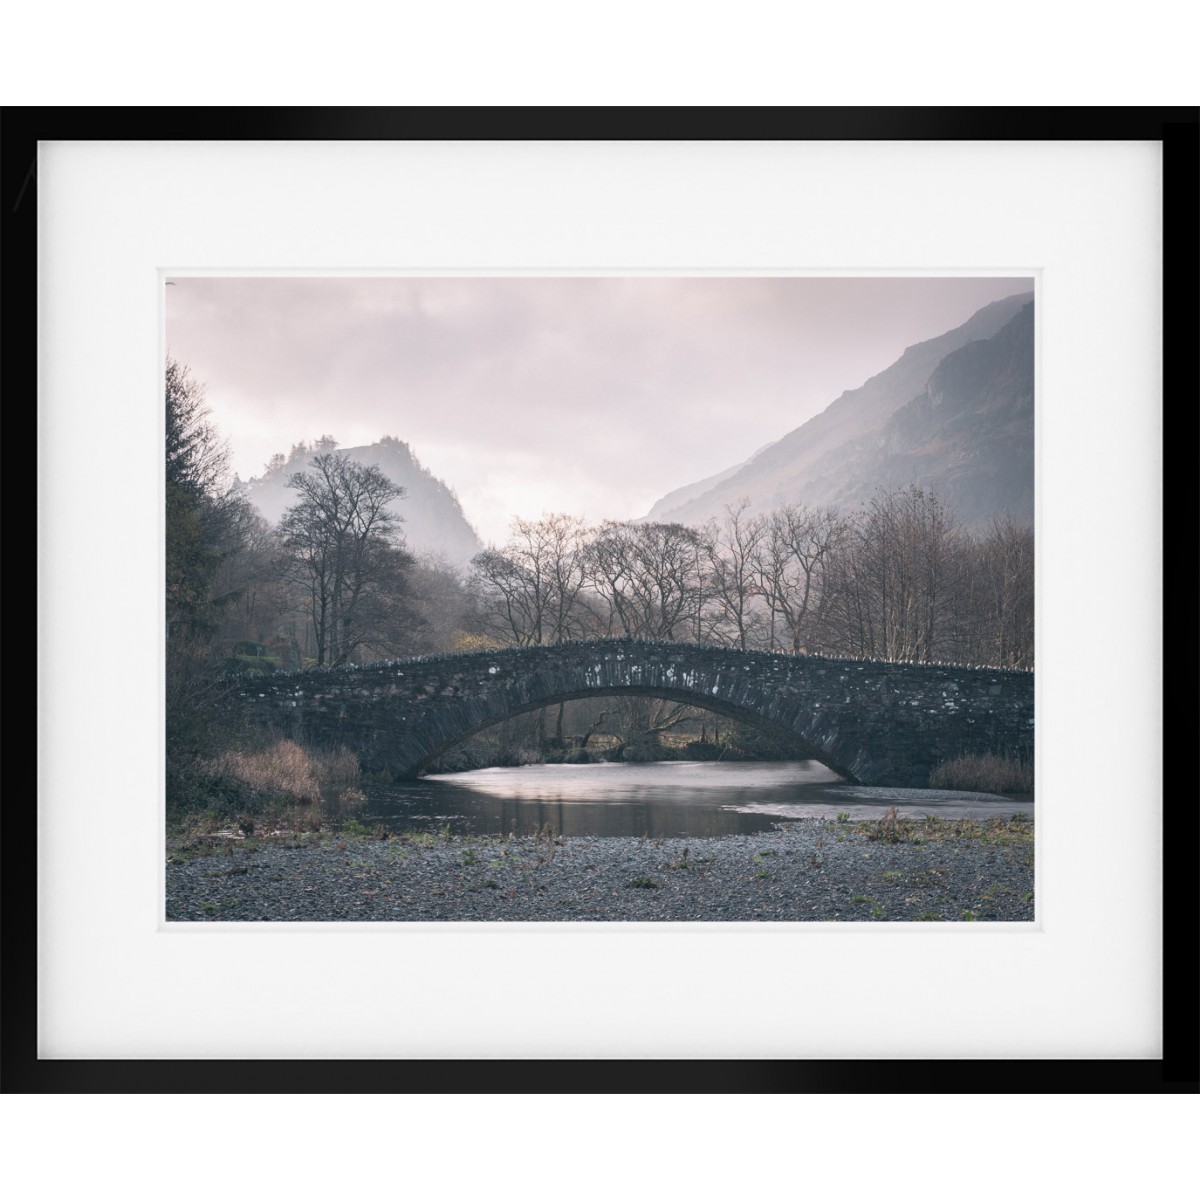 Grange Bridge in Borrowdale framed print